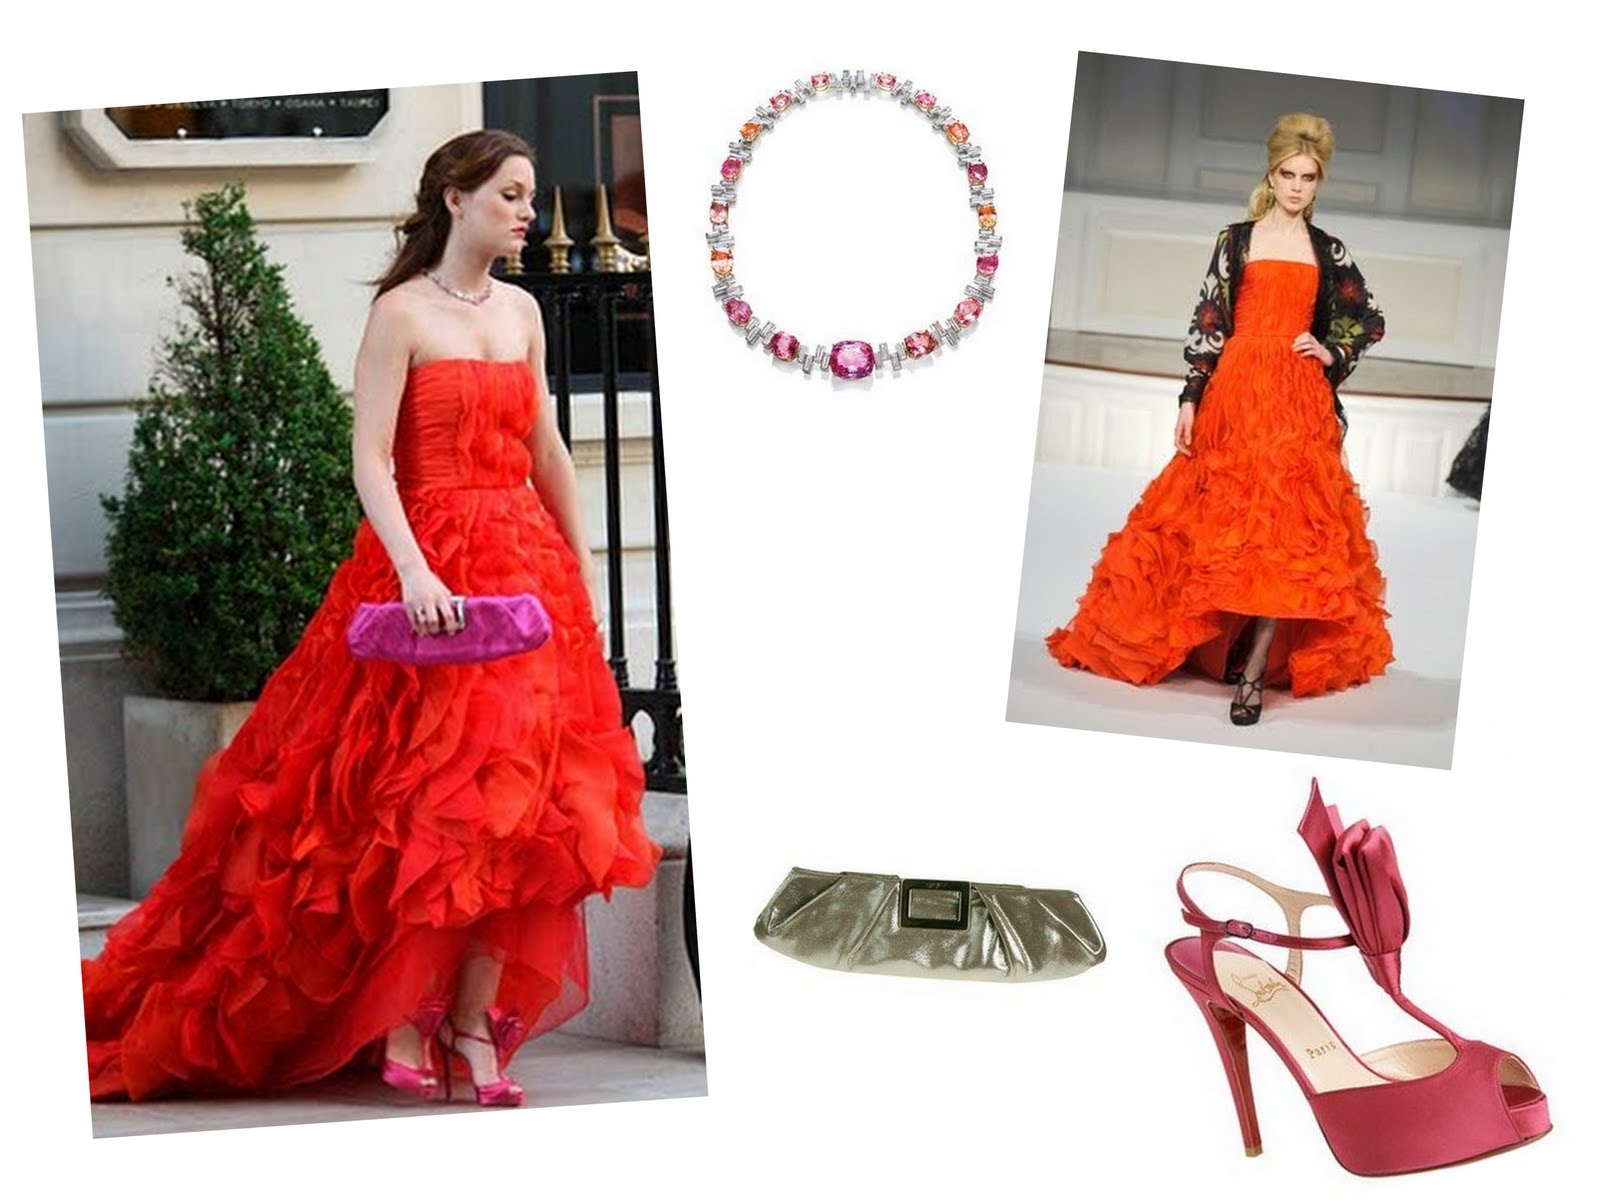 http://1.bp.blogspot.com/_gyvLoqGOgK8/TM3bxv2fxTI/AAAAAAAABZE/AxikoQDIqog/s1600/Blair+red+dress.jpg